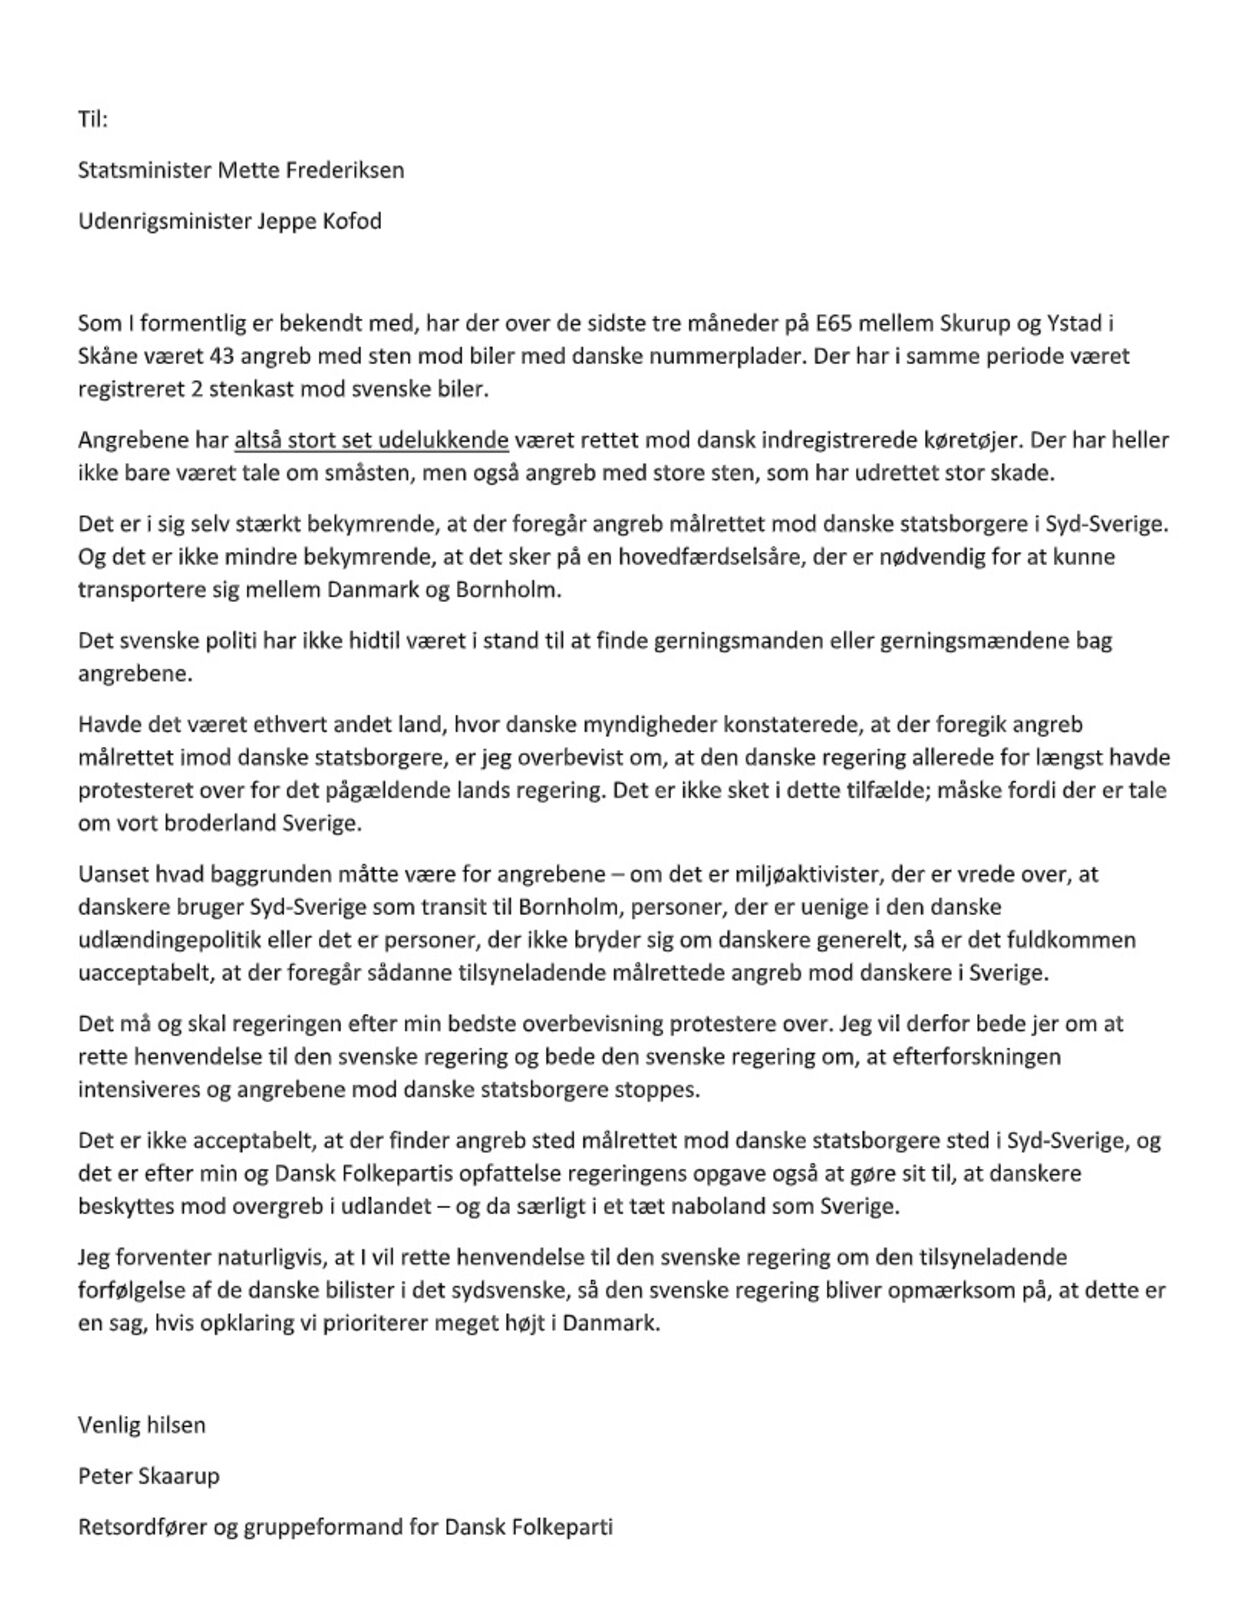 Peter Skaarups brev til Jeppe Kofod og Mette Frederiksen.